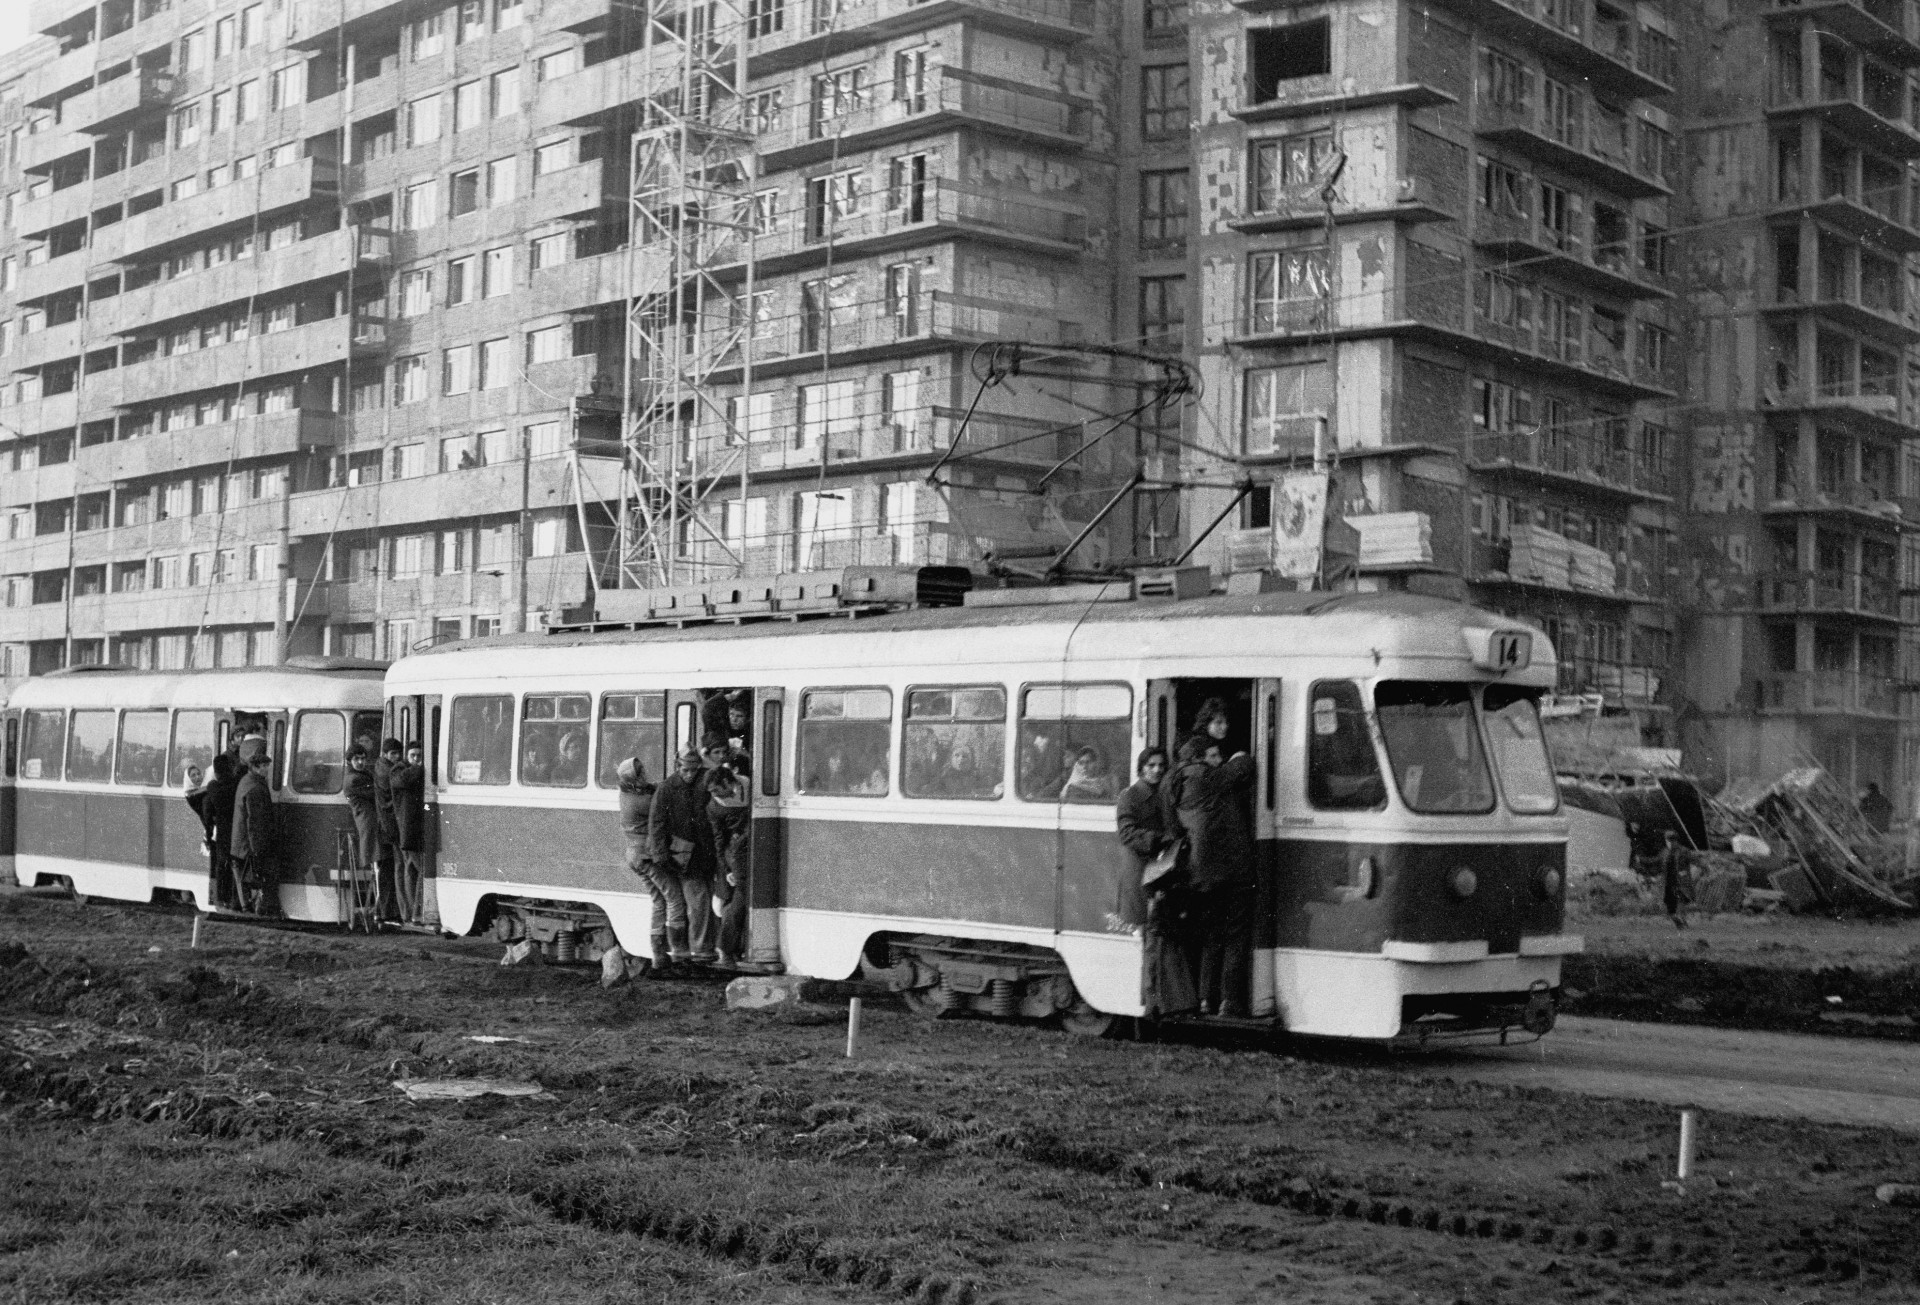 Tramvai linia 14 în Pantelimon 15.10.1975